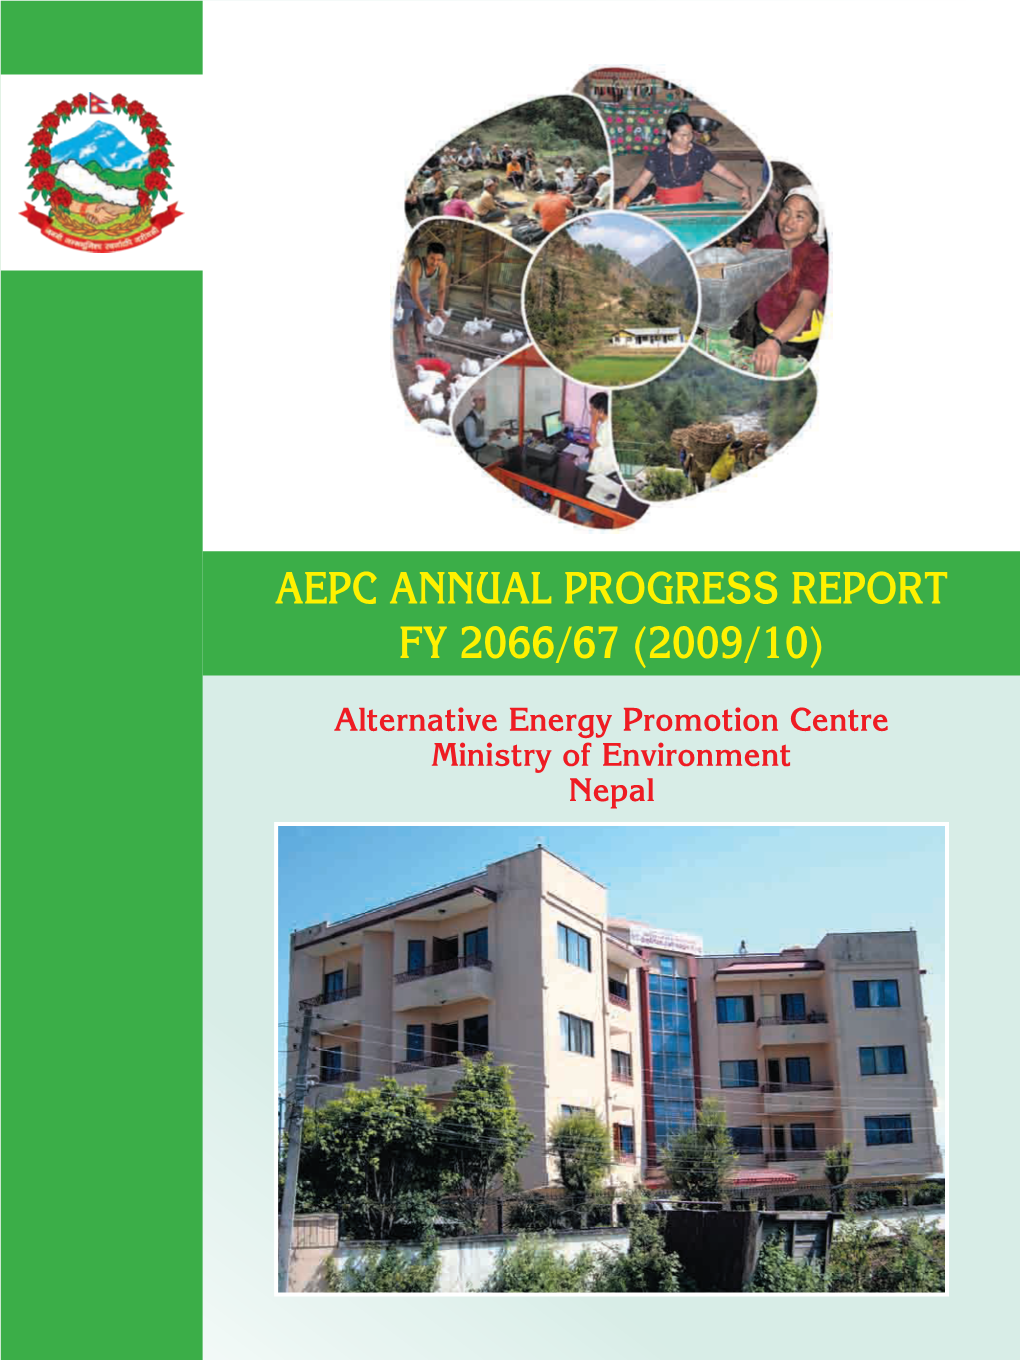 Aepc Annual Progress Report Fy 2066/67 (2009/10)